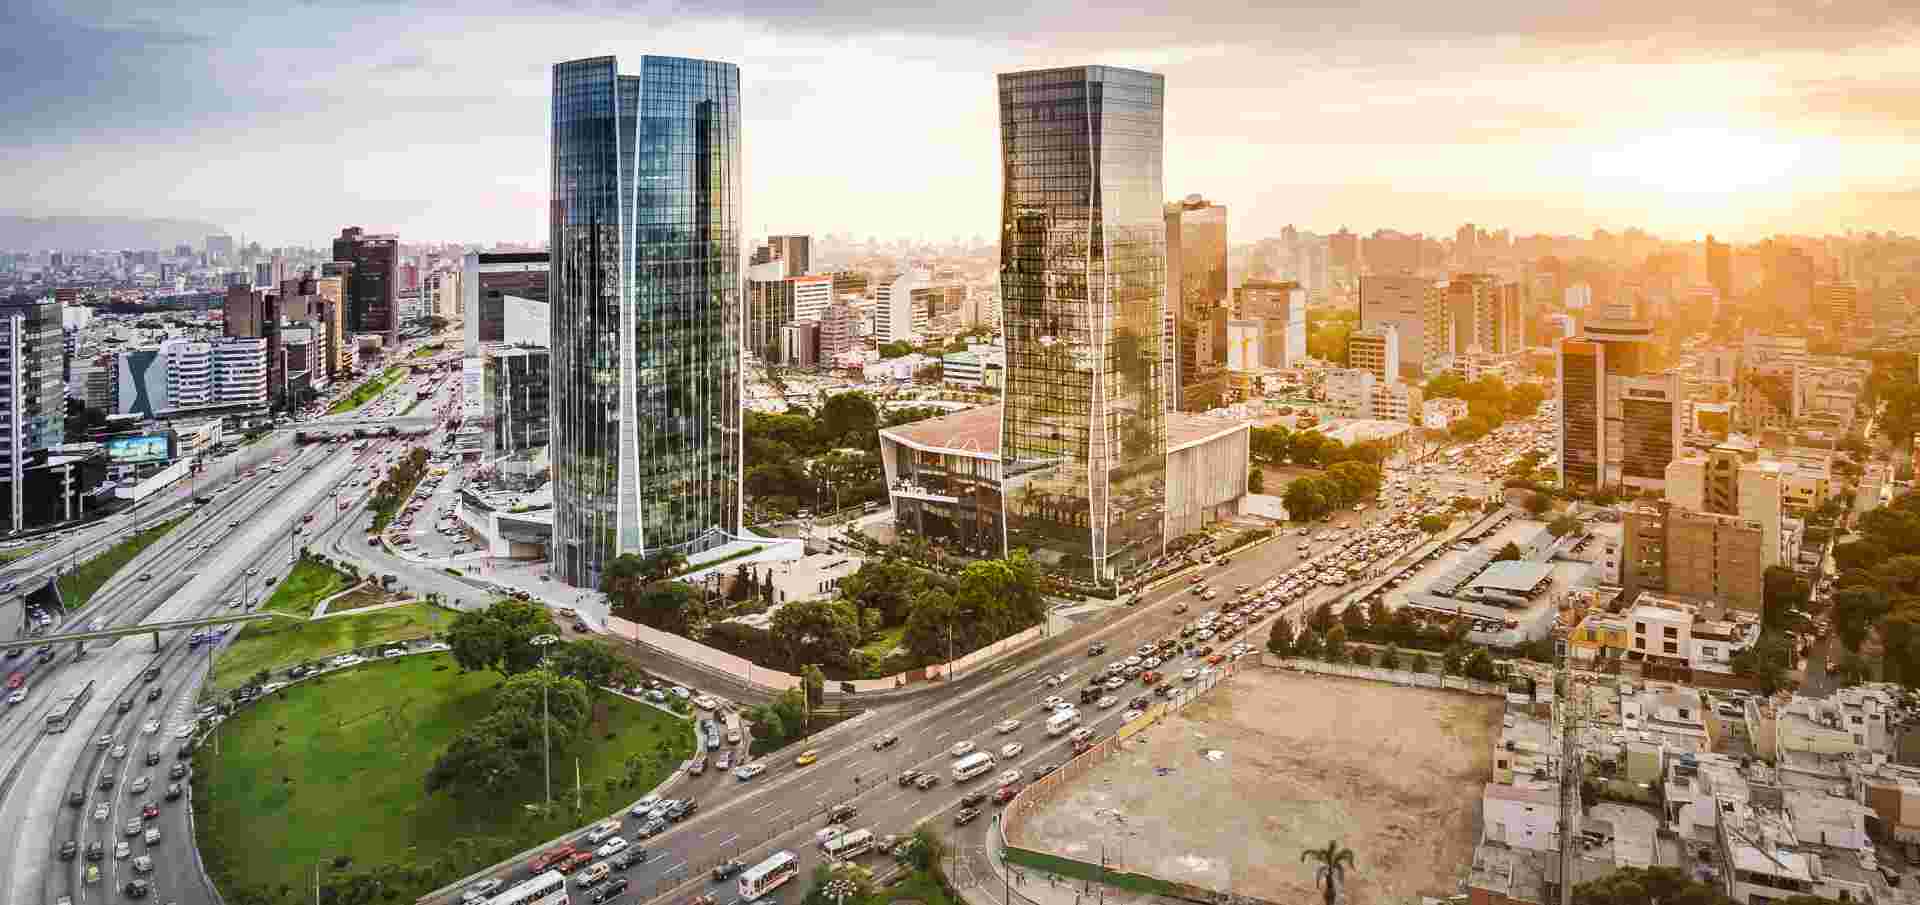 Infraestructura urbana: ¿dónde y para qué aprenderla? | BlogUCSP